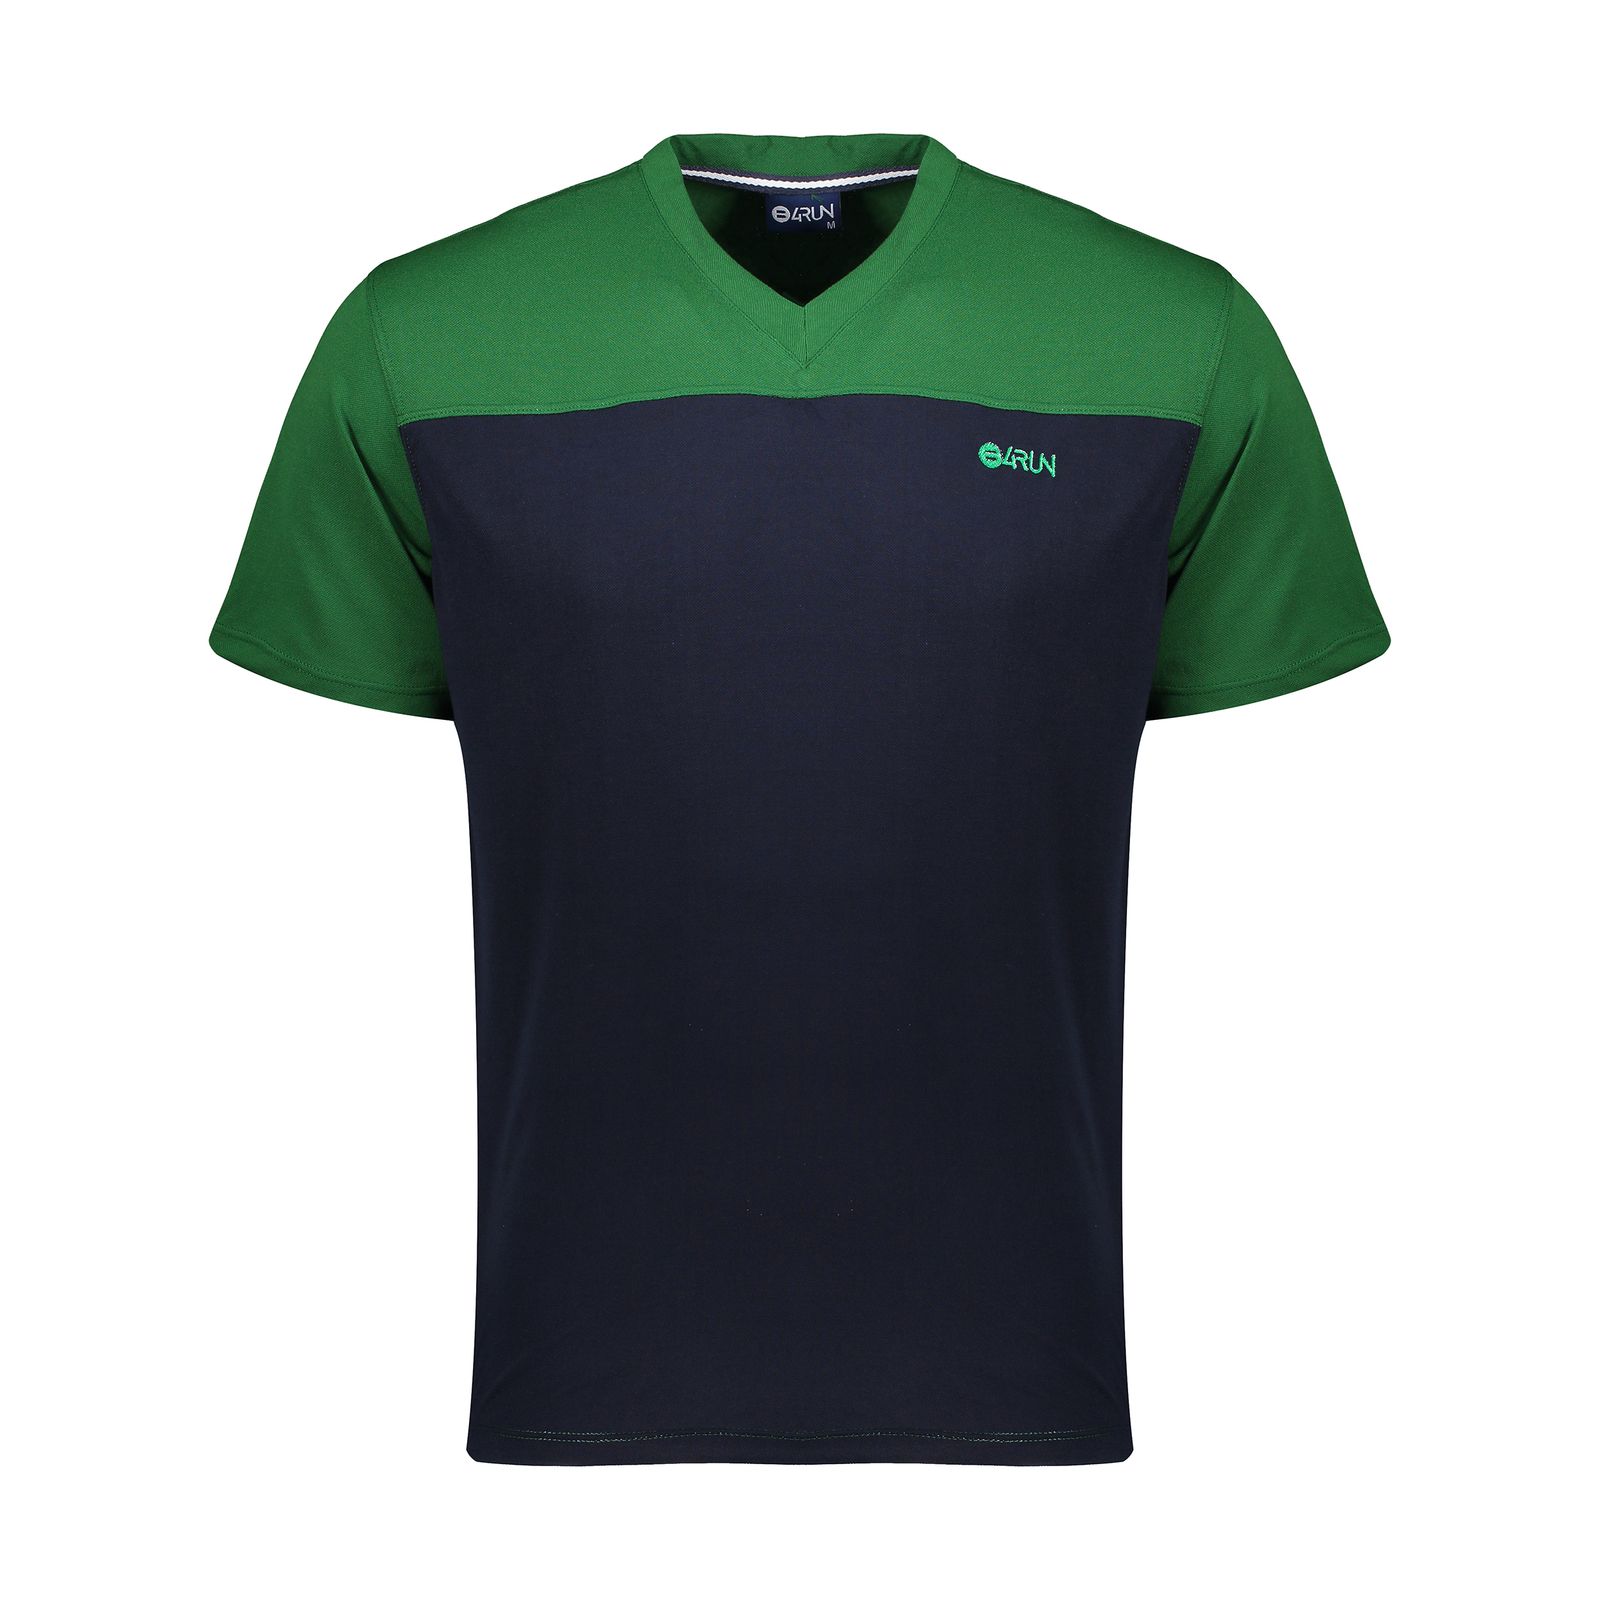 تی شرت ورزشی مردانه بی فور ران مدل 980317-4359 - سبز - سرمه ای - 1